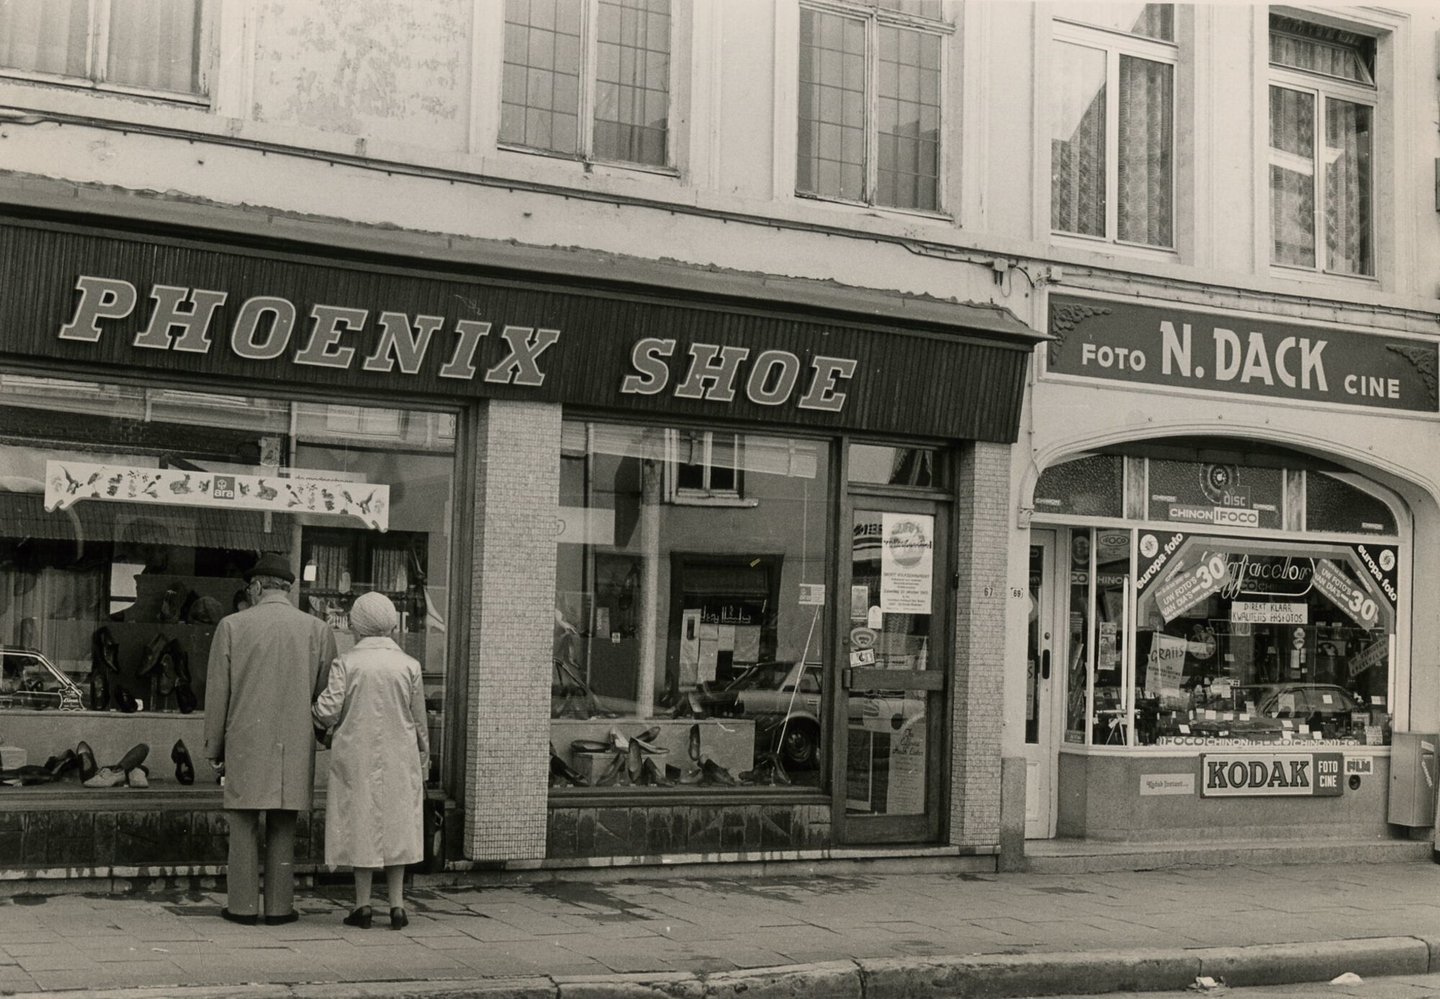 Etalage van schoenwinkel Phoenix Shoe en fotografiewinkel N. Dack in Gent